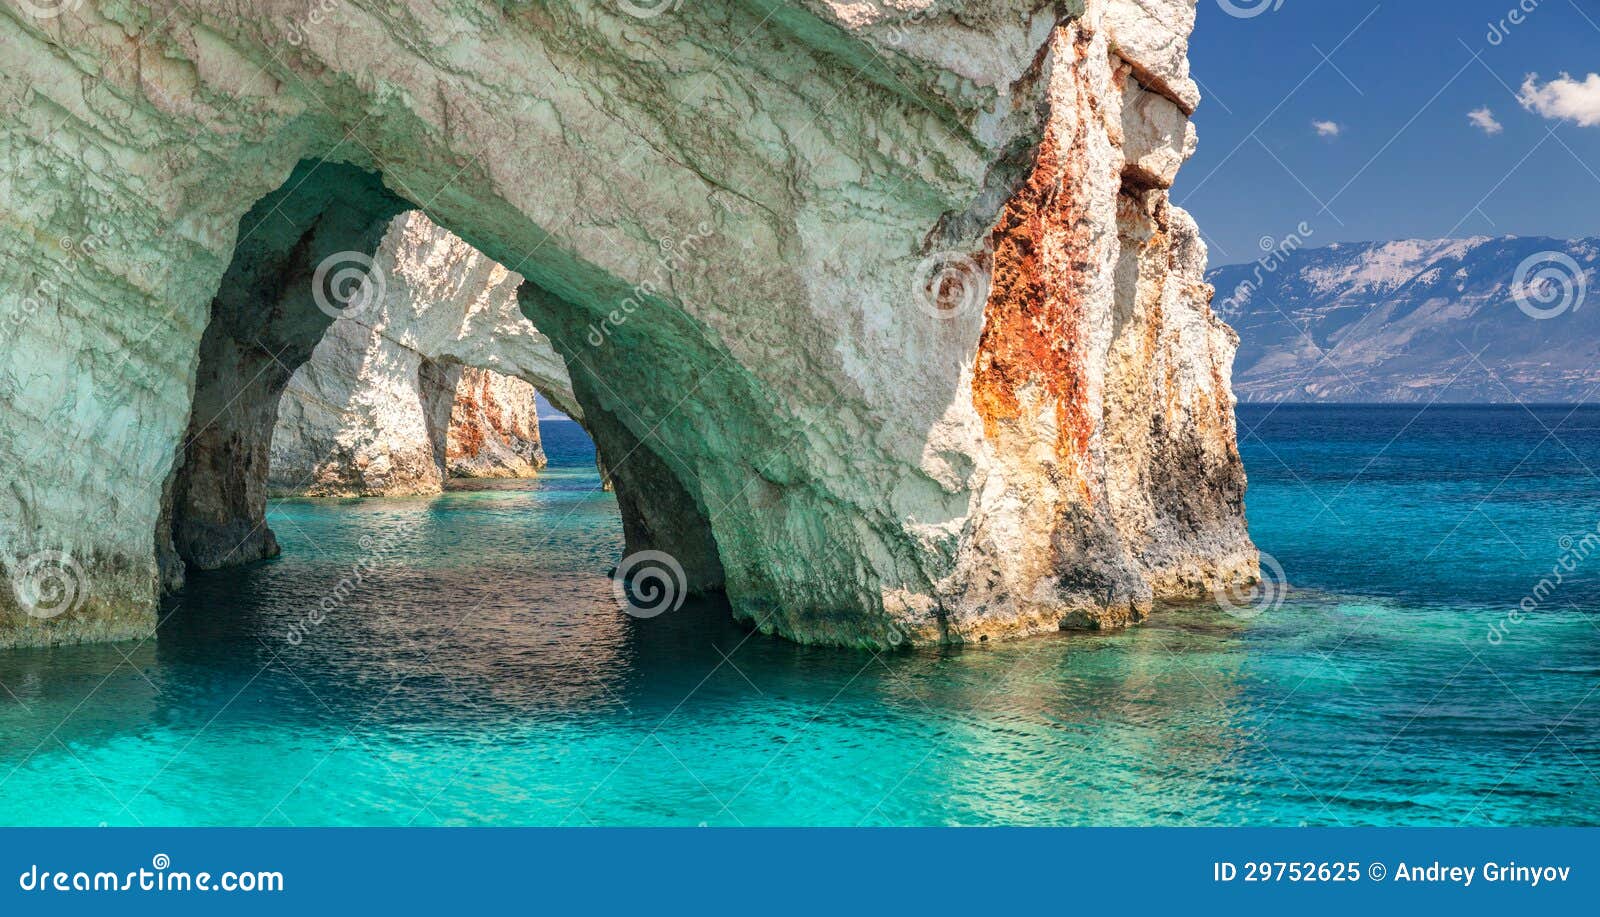 blue caves, zakinthos island, greece